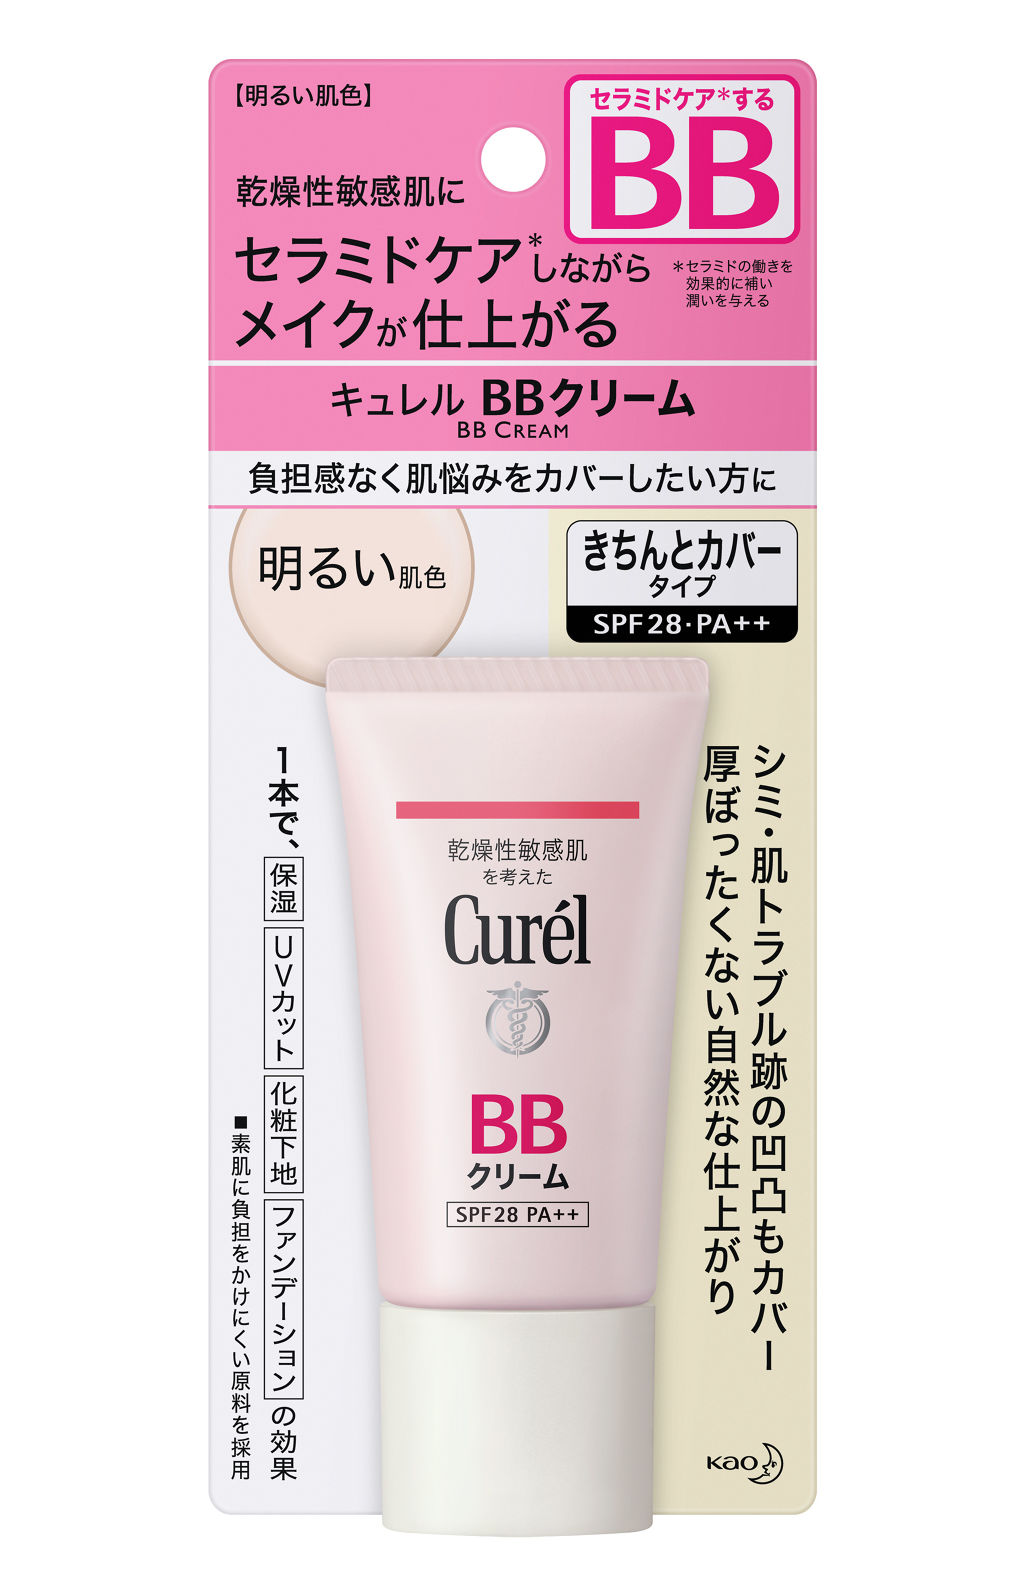 BBクリーム 明るい肌色 / キュレル(Curel) | LIPS